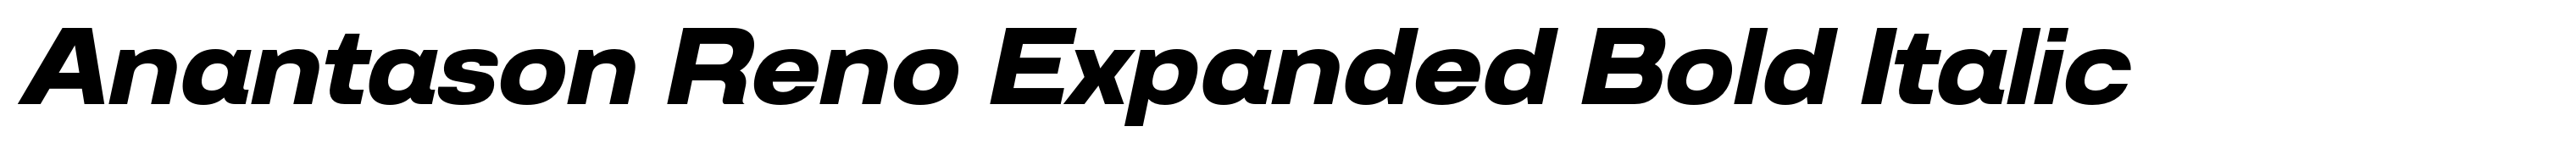 Anantason Reno Expanded Bold Italic